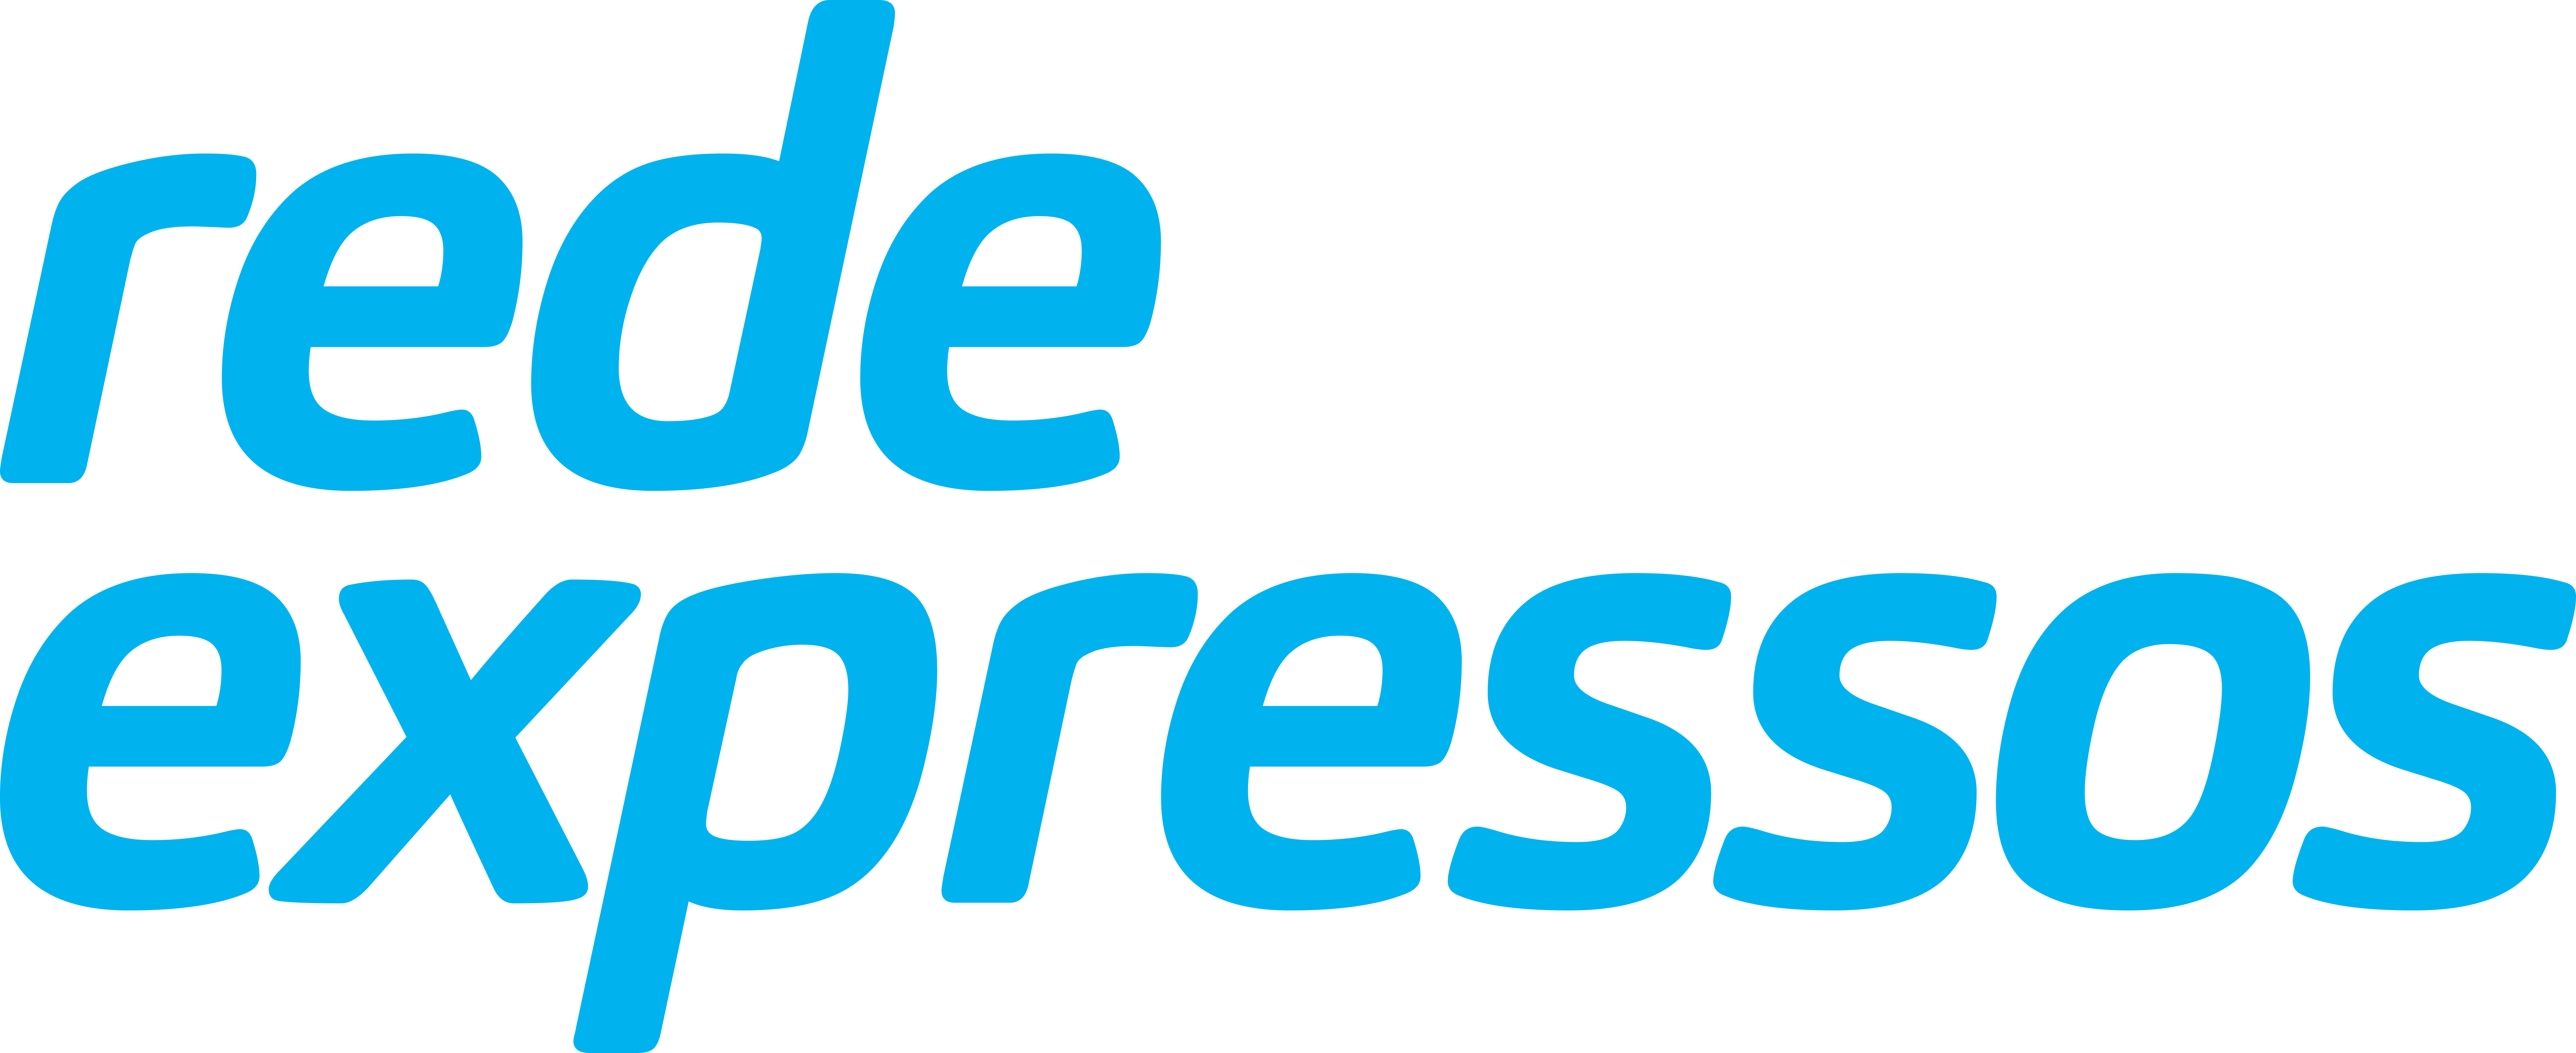 Rede Expressos-logo